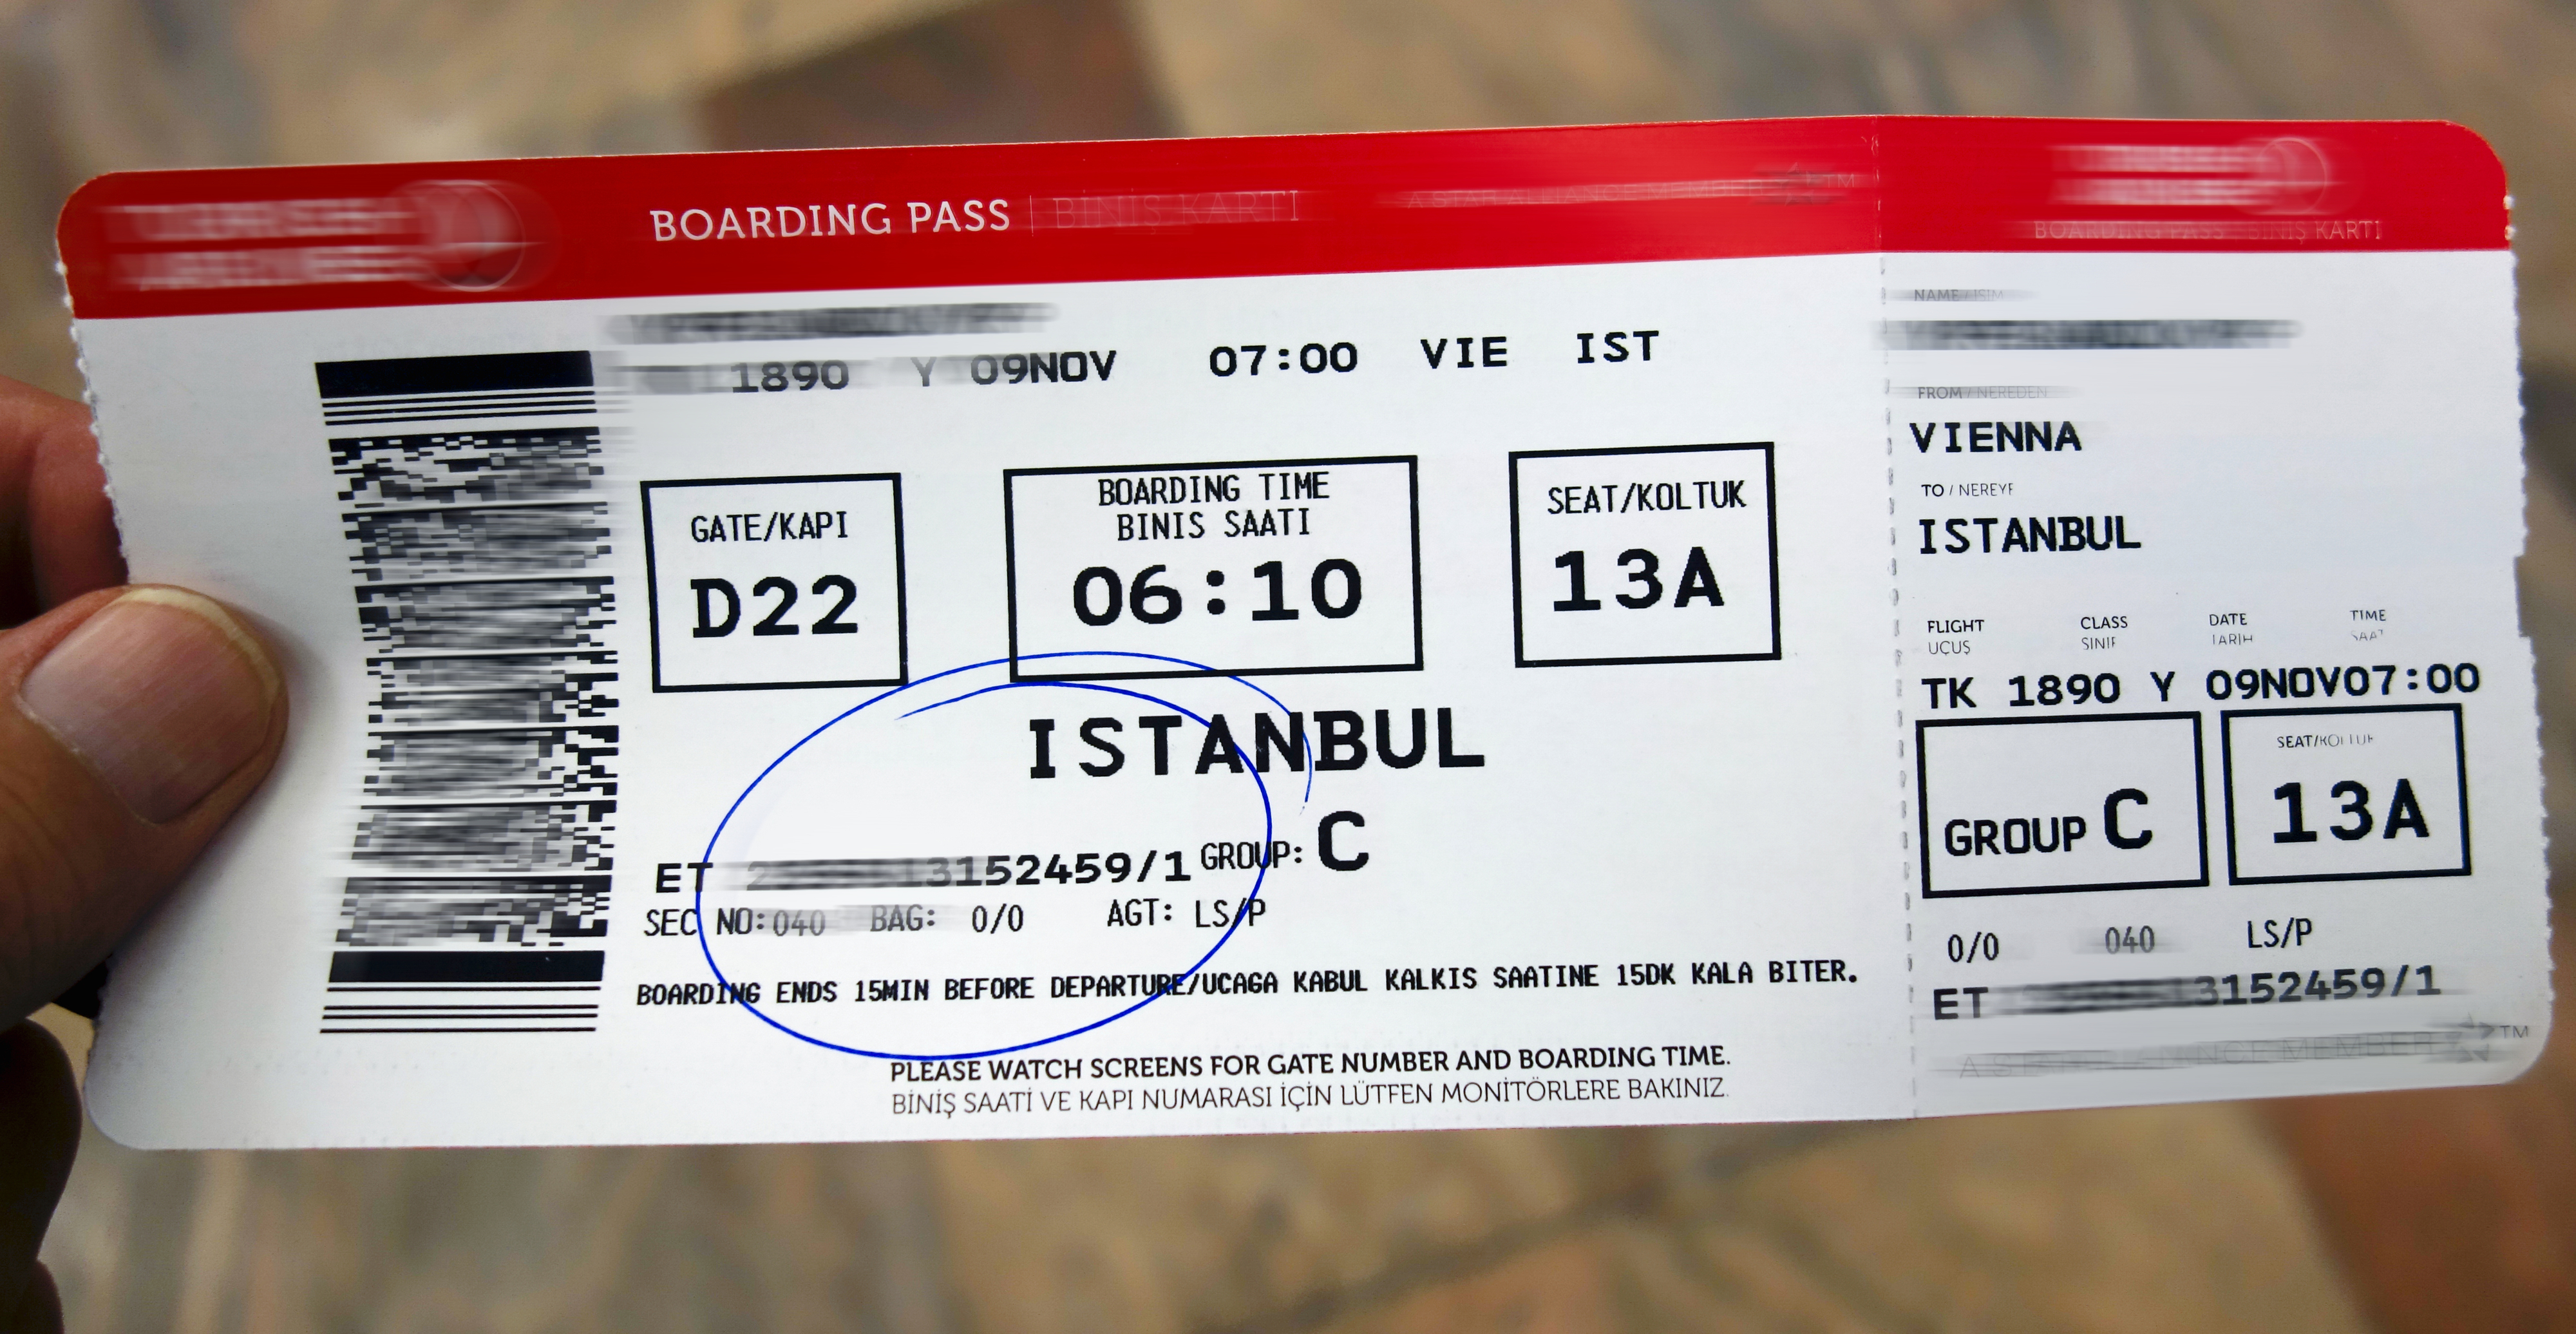 Вые билет. Билет на самолет Turkish Airlines. Boarding Pass. Билет. Авиабилеты фото.